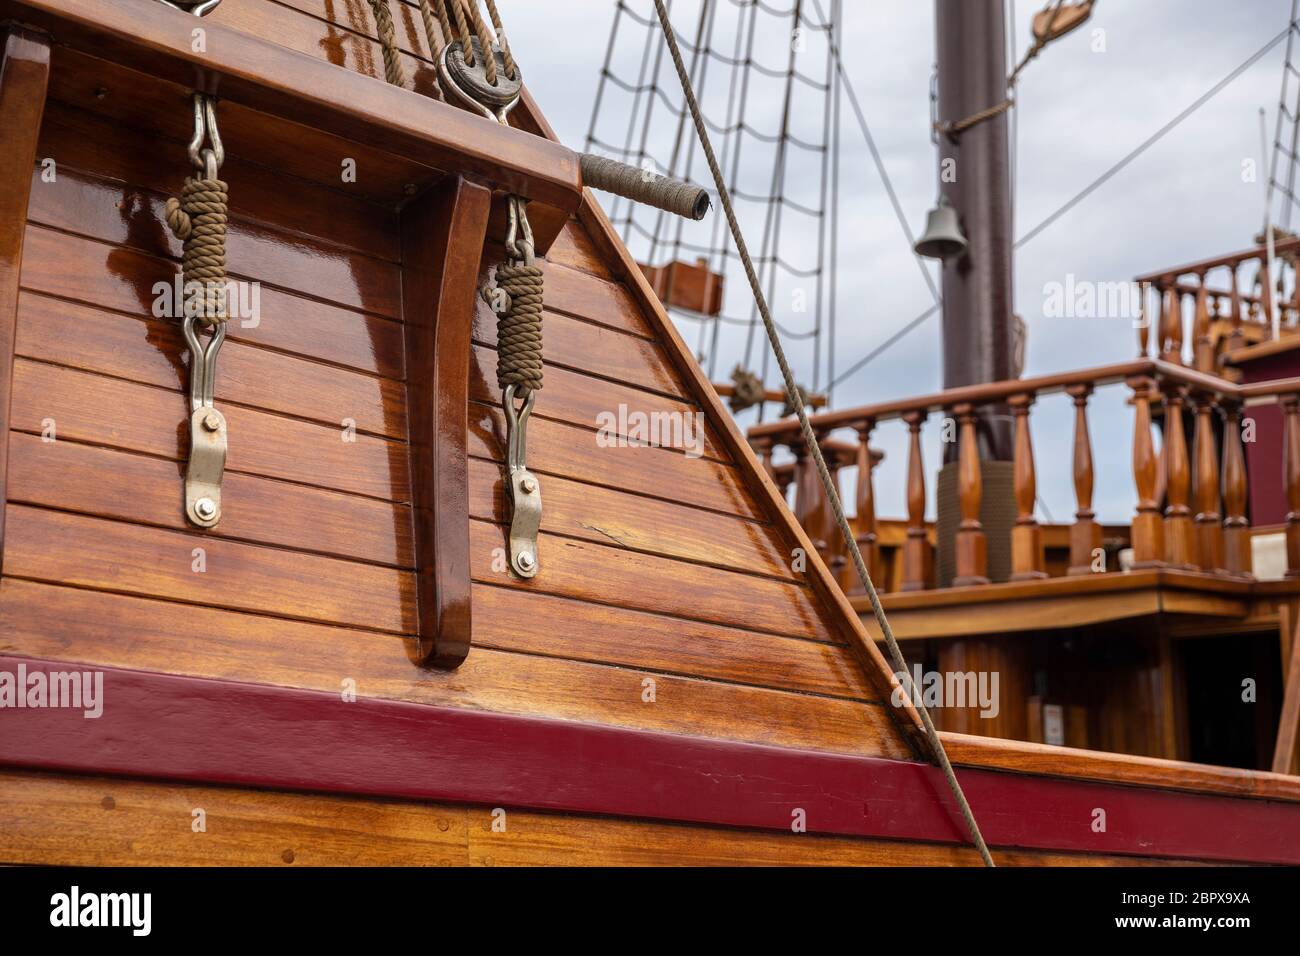 Un détail historique de bateau à voile avec cordes dans un ancien style rustique en bois. Matériaux en bois de teinte chaude pour une sensation rétro Banque D'Images